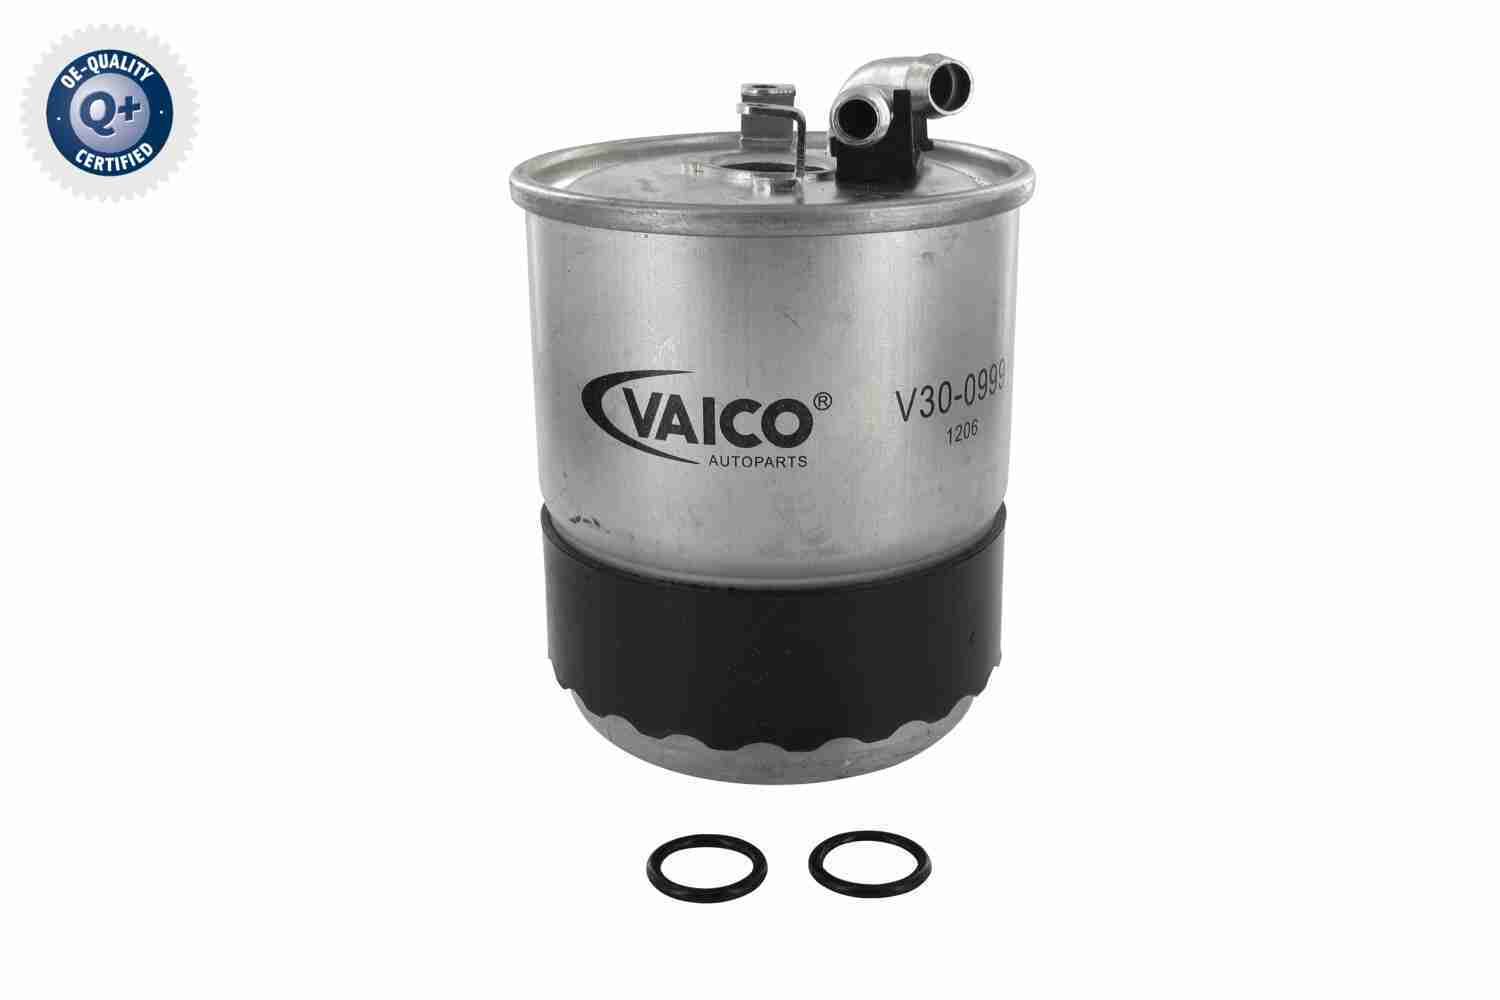 Obrázok Palivový filter VAICO Q+, original equipment manufacturer quality V300999